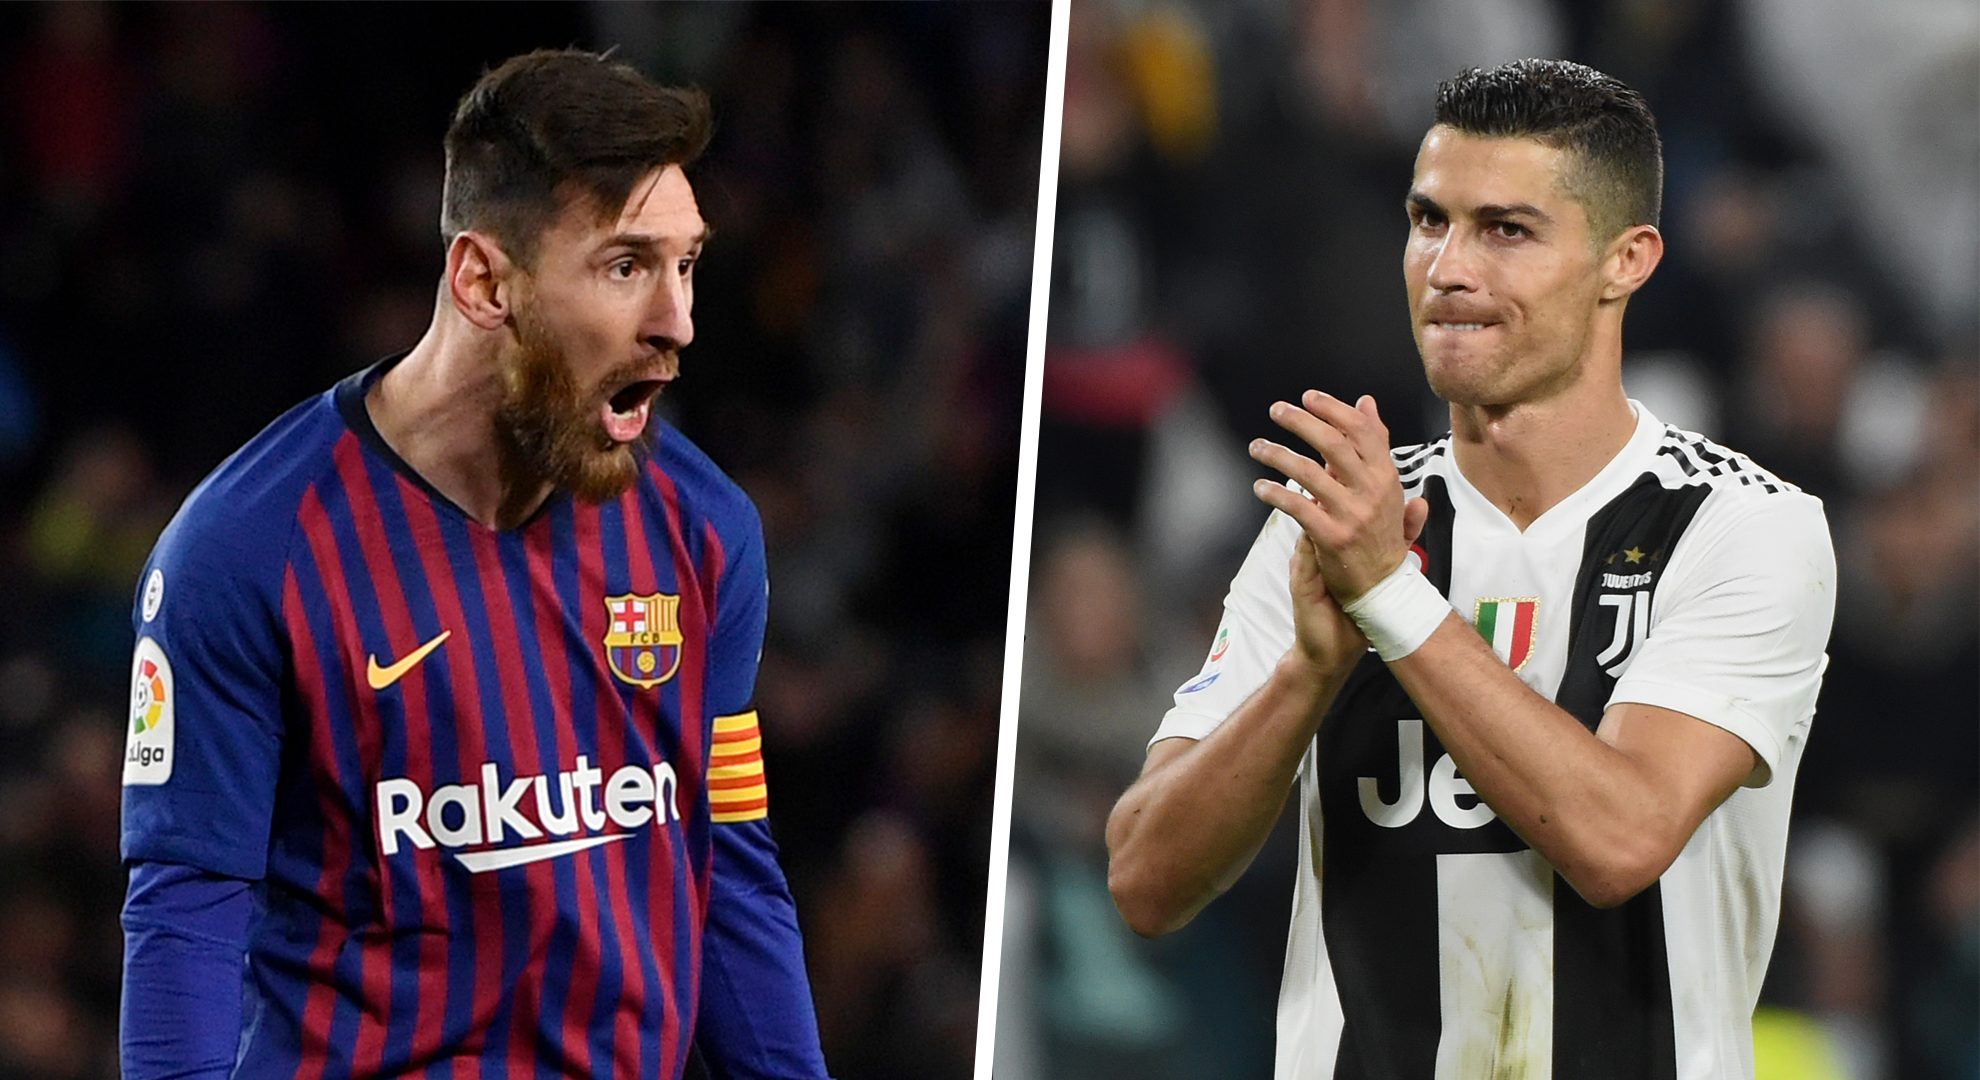 Messi meilleur joueur polyvalent par nouvelle étude scientifique, Ronaldo derrière Hazard